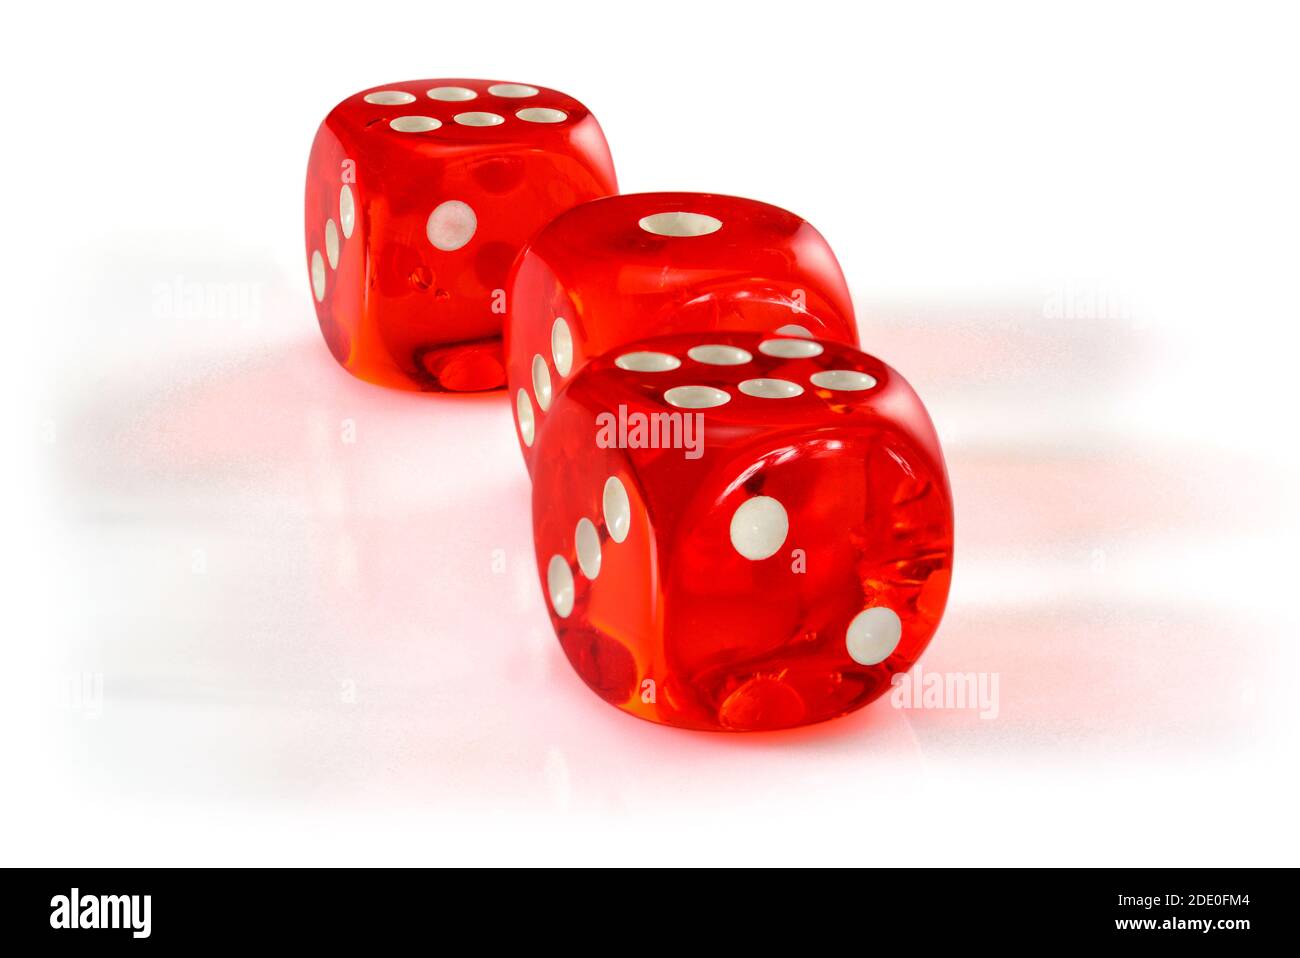 Rote Acryl transparente Würfel für Spiele. Drei Glücksspiel durchscheinende  Würfel auf weißem Hintergrund, Makro Nahaufnahme hohe Auflösung  Stockfotografie - Alamy